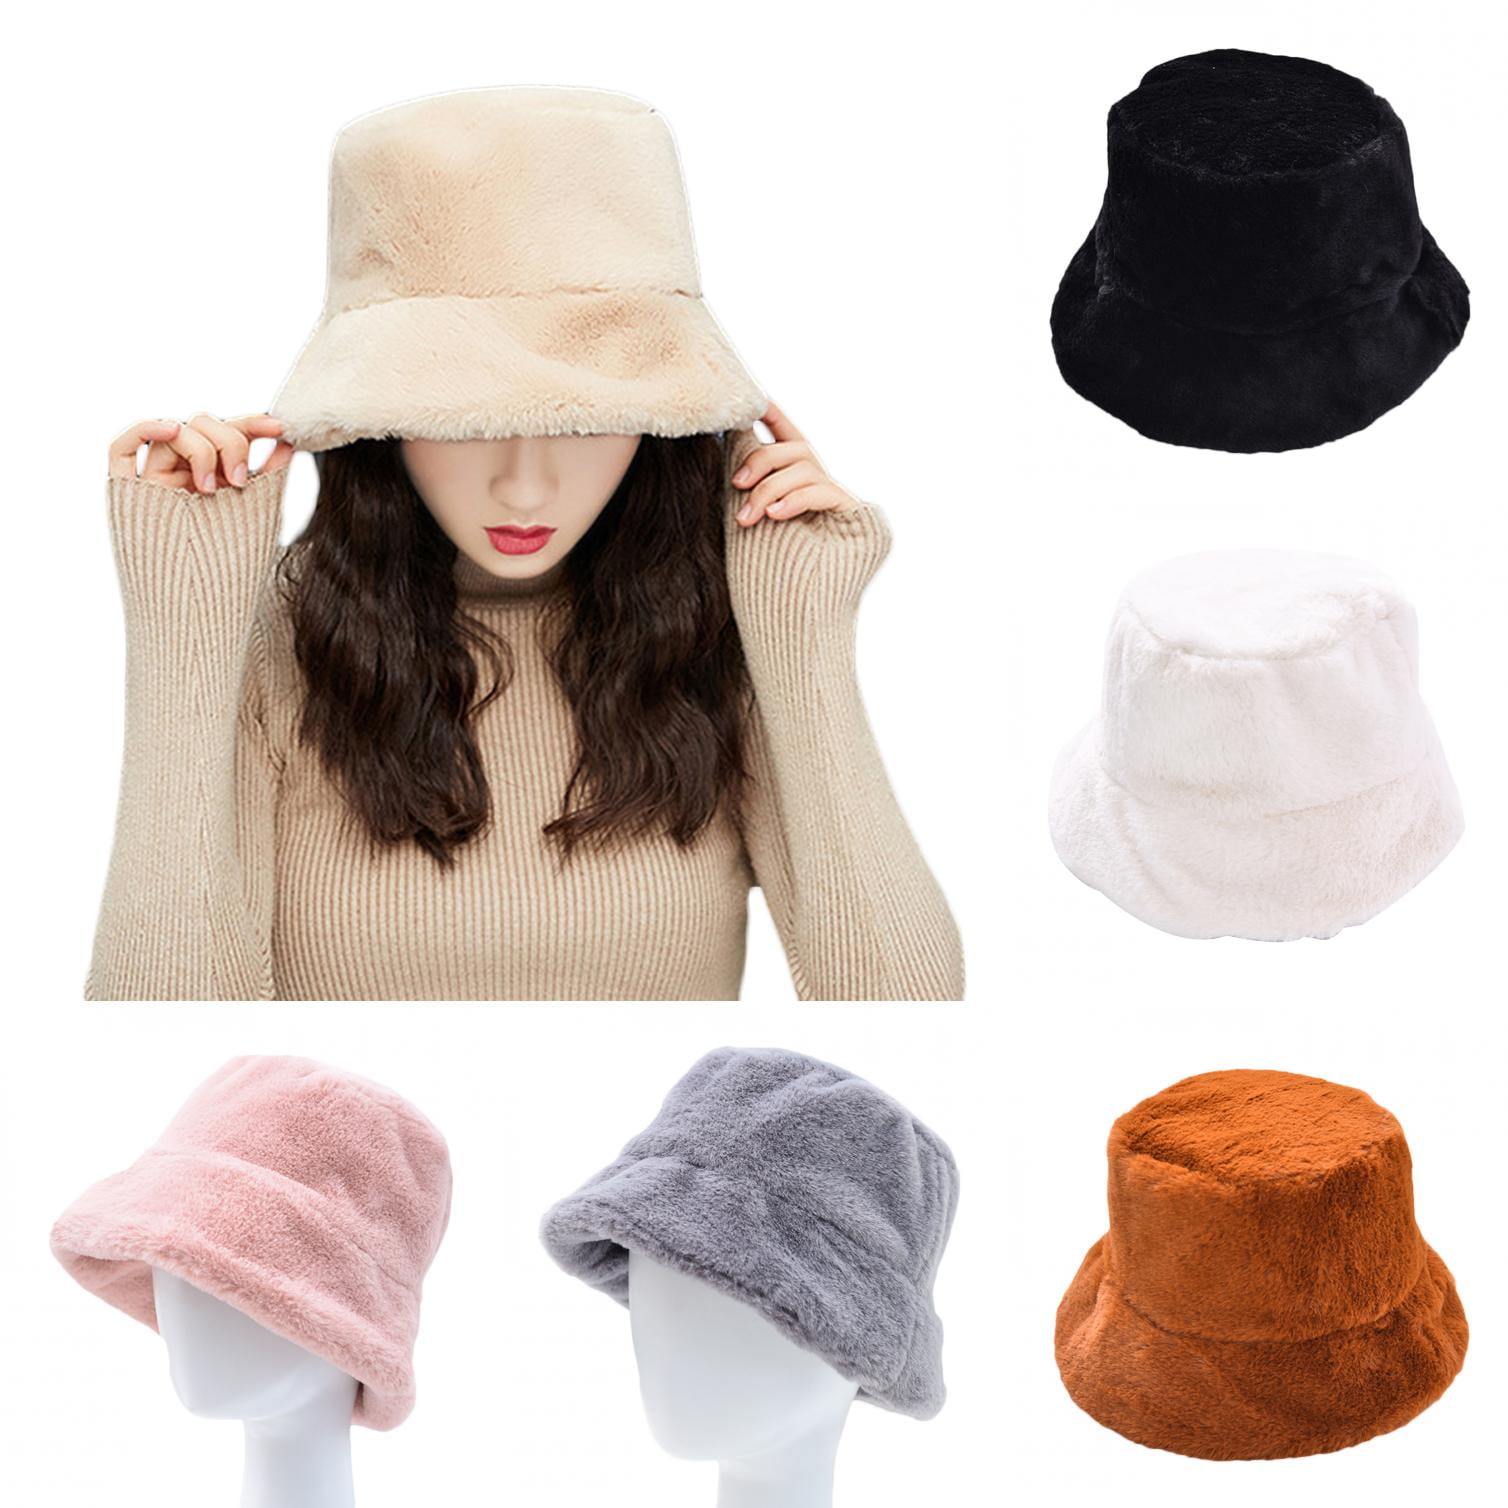 Limei Winter Plush Bucket Hat for Women Fuzzy Bucket Caps Casual Warm ...